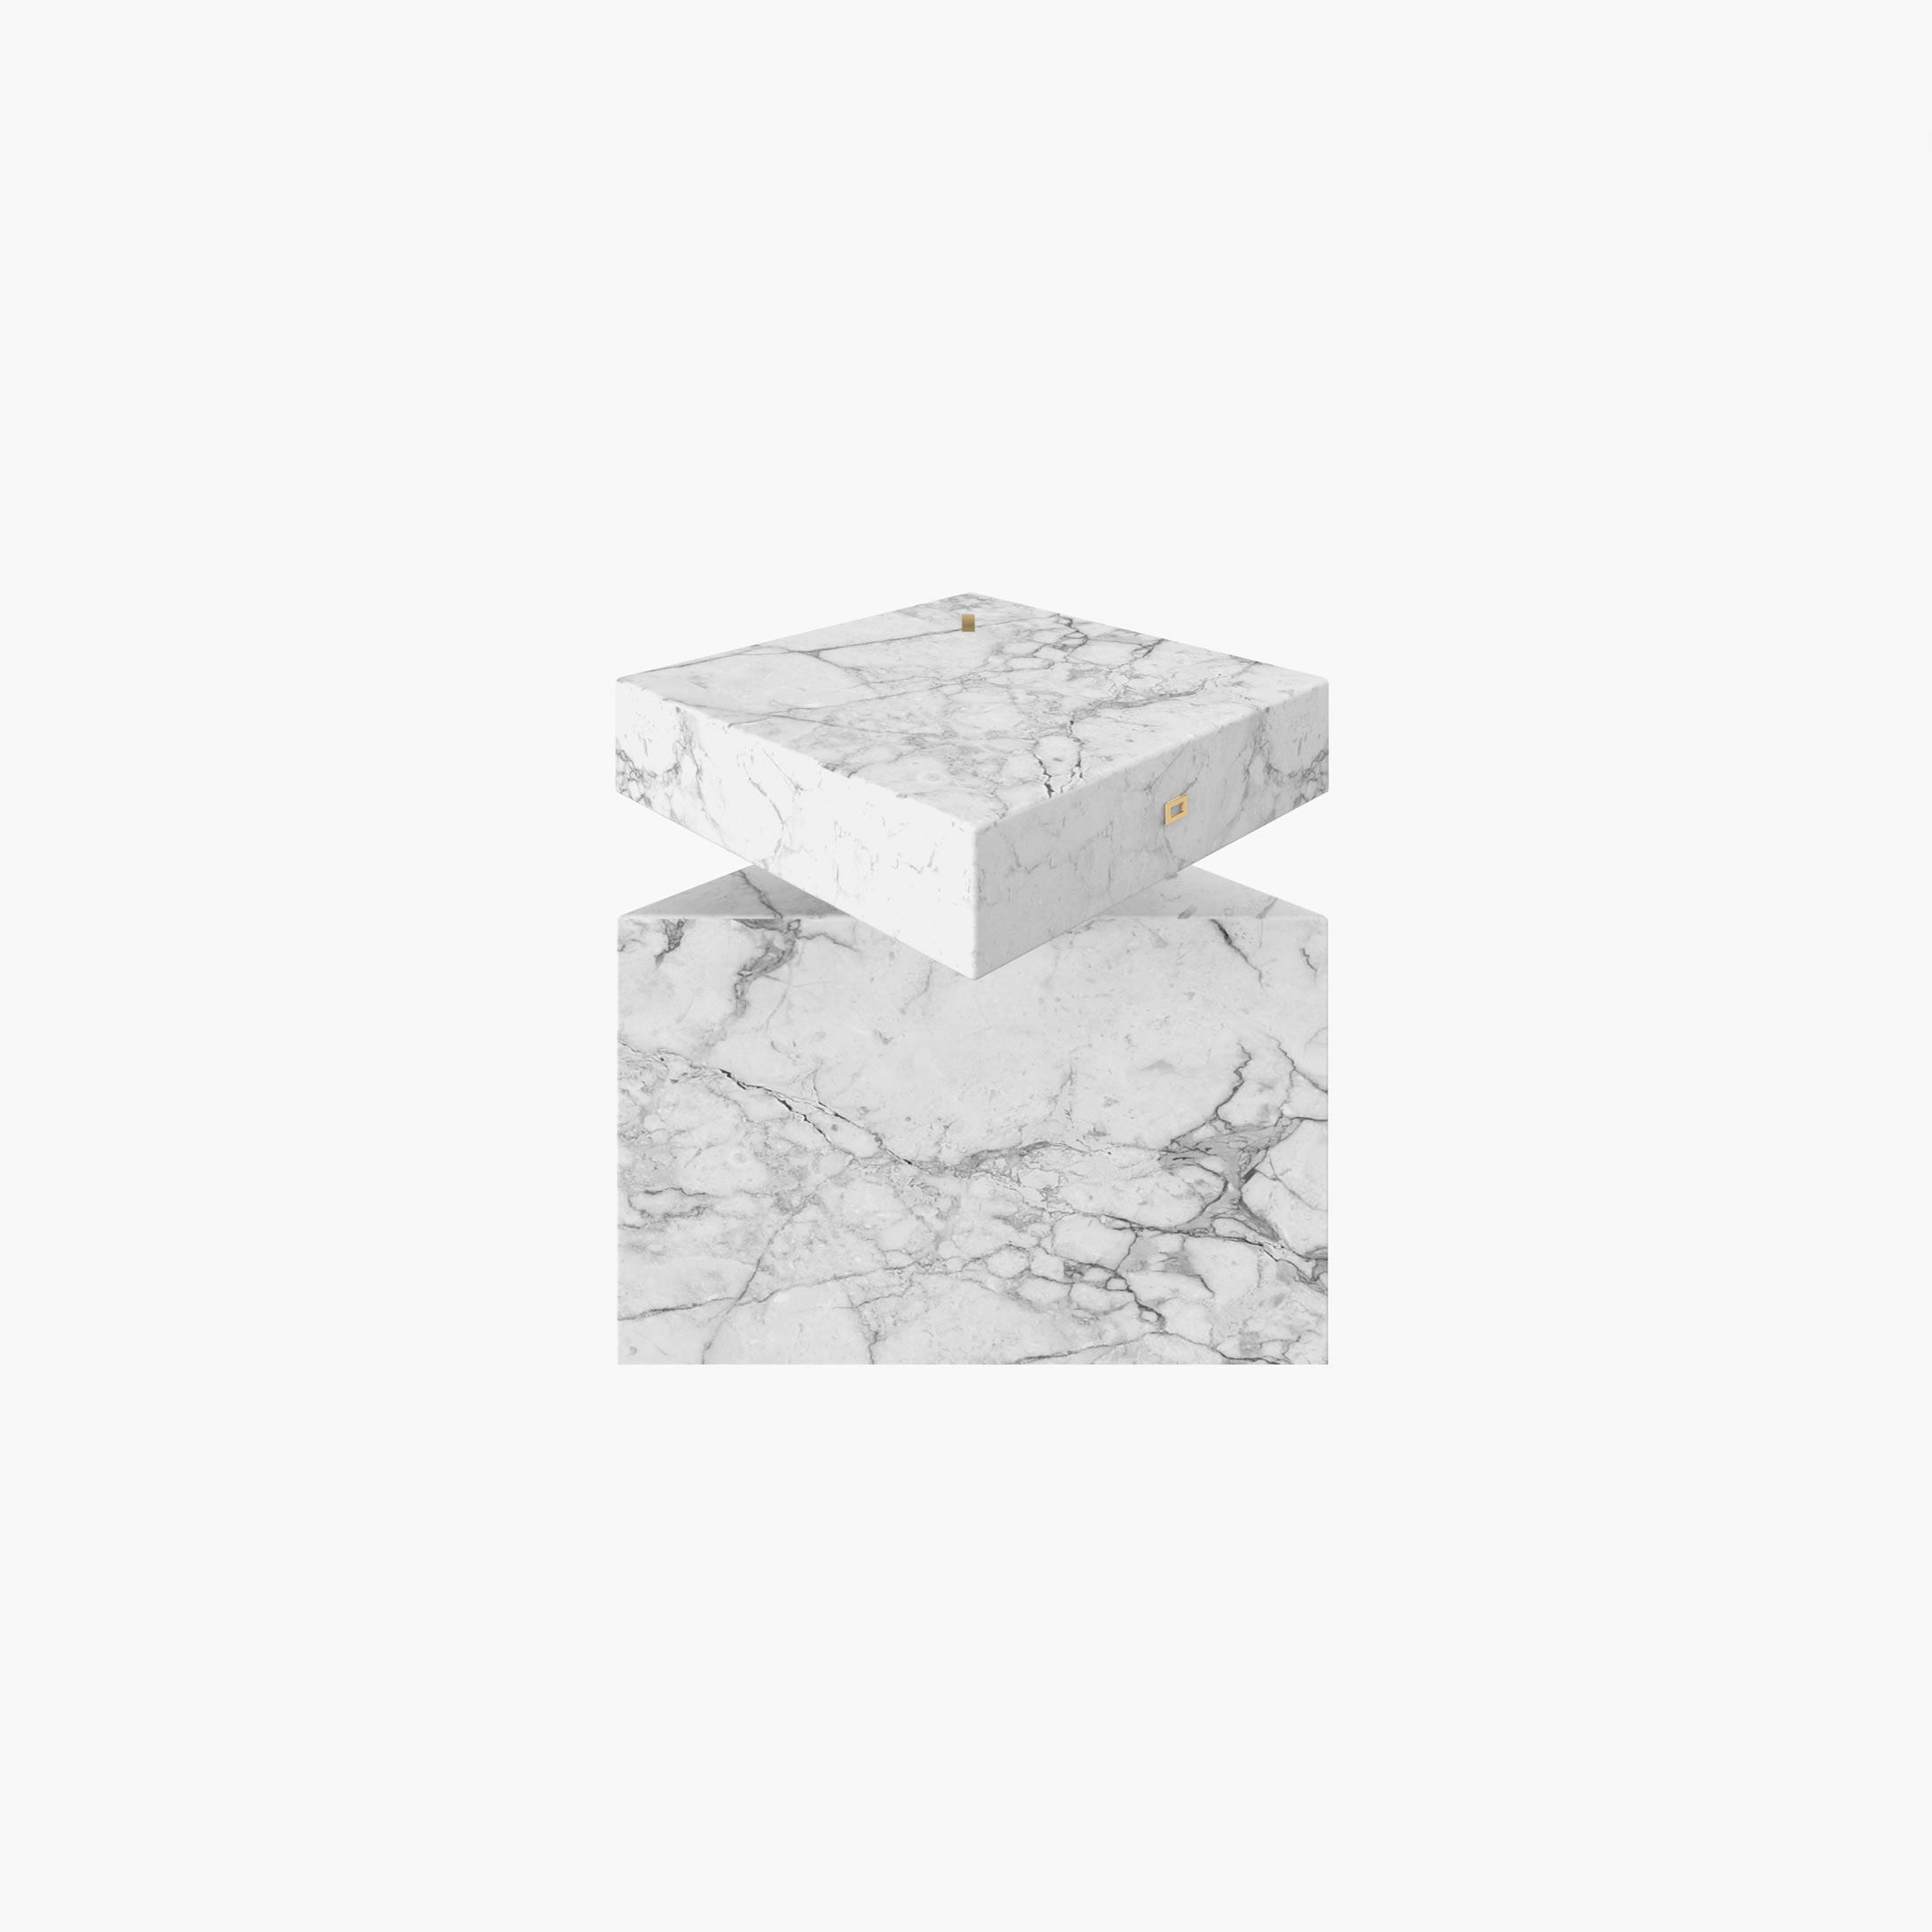 Beistelltisch Zylinder Quader Prisma Weiss Arabescato Marmor modern Wohnzimmer Designer Beistelltische FS 116 FELIX SCHWAKE